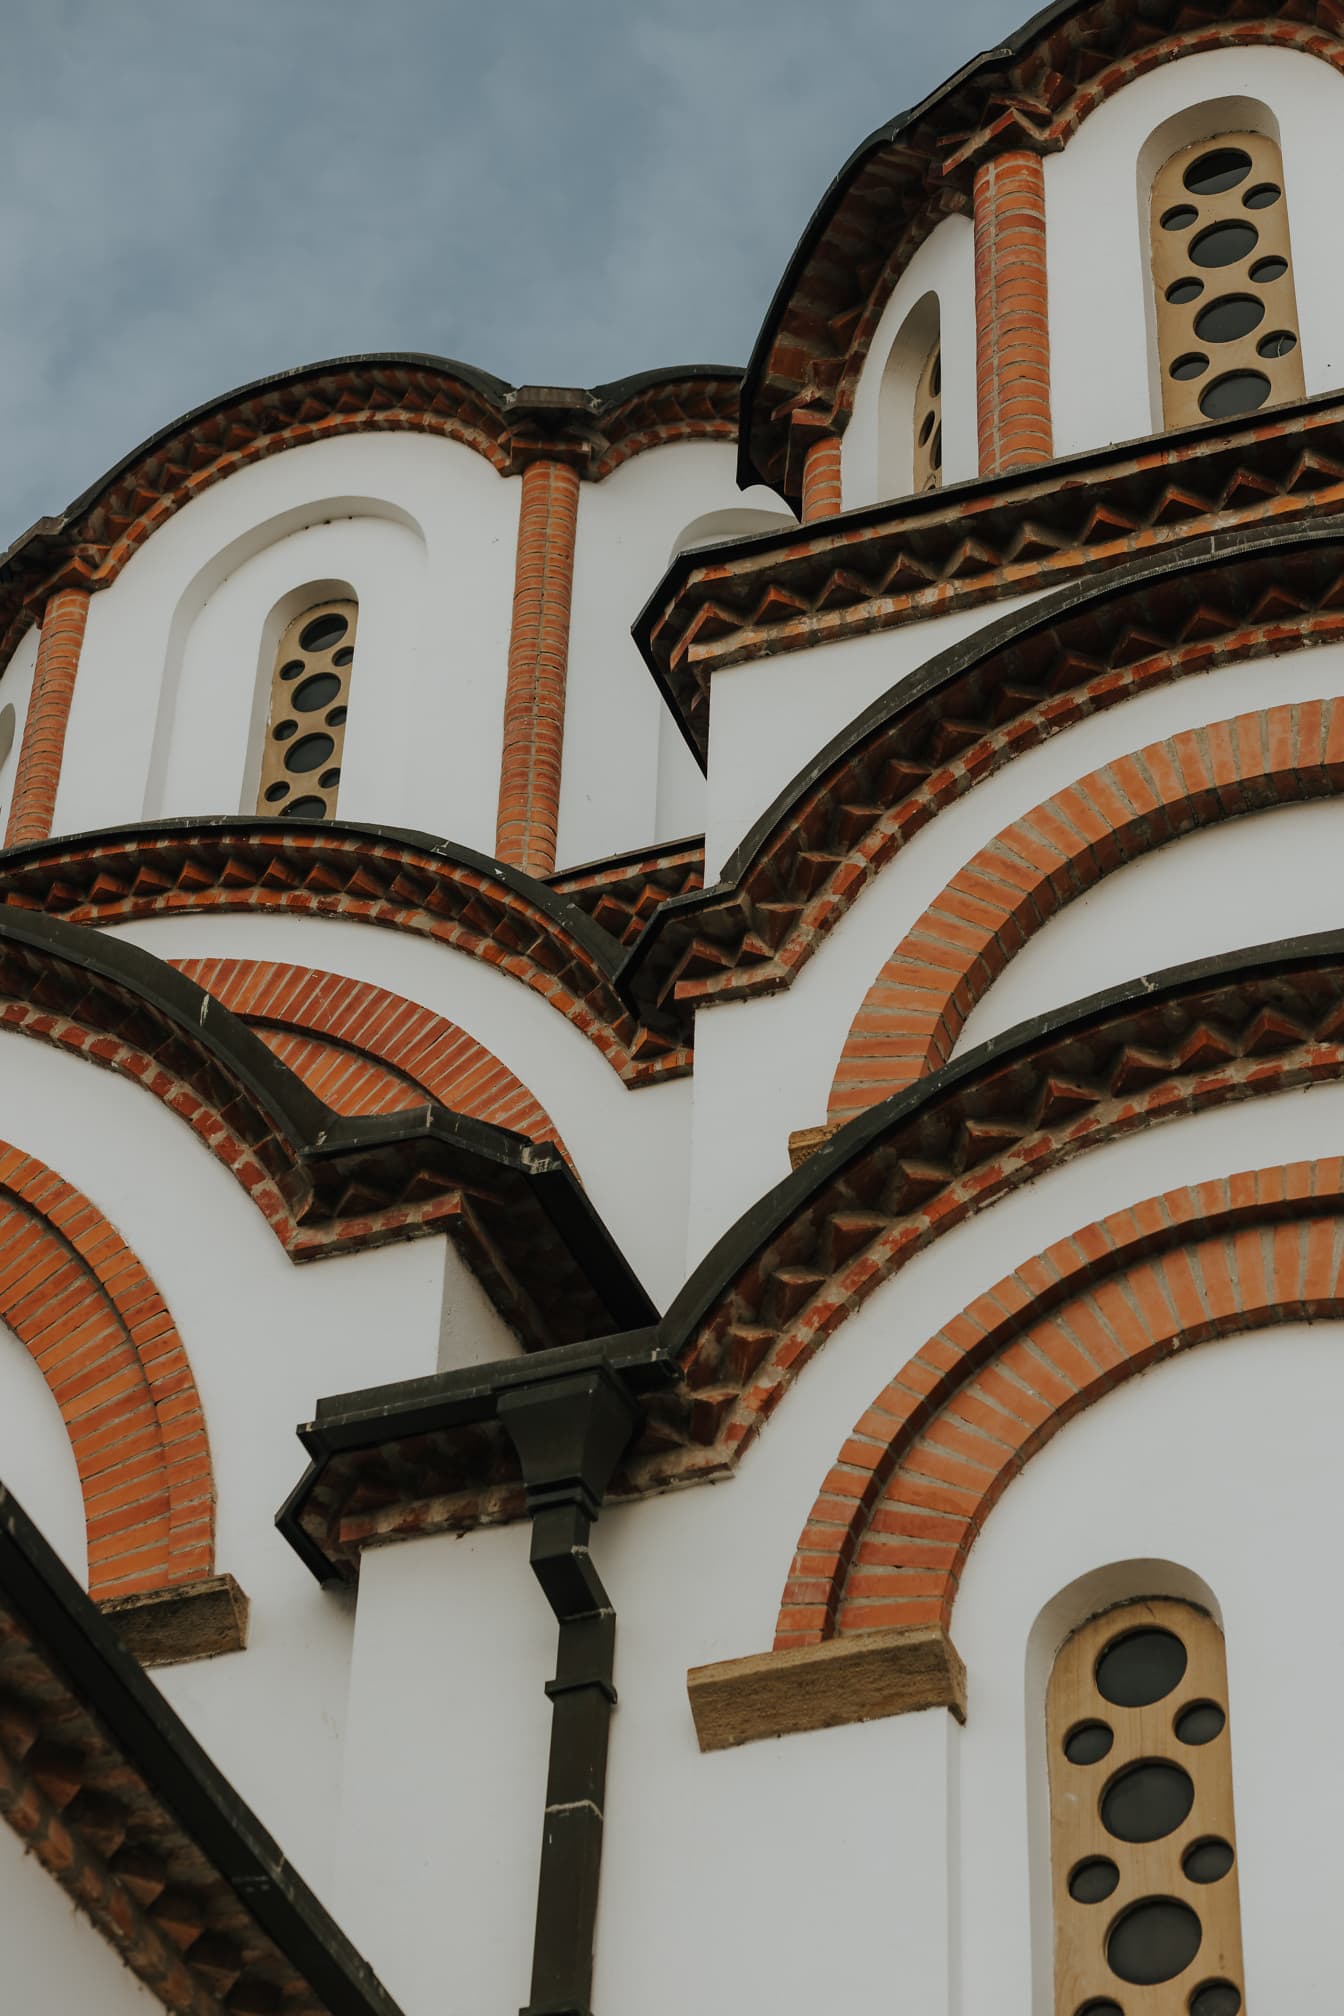 Medeltida bysantinsk stil av smala fönster på ortodox kyrka